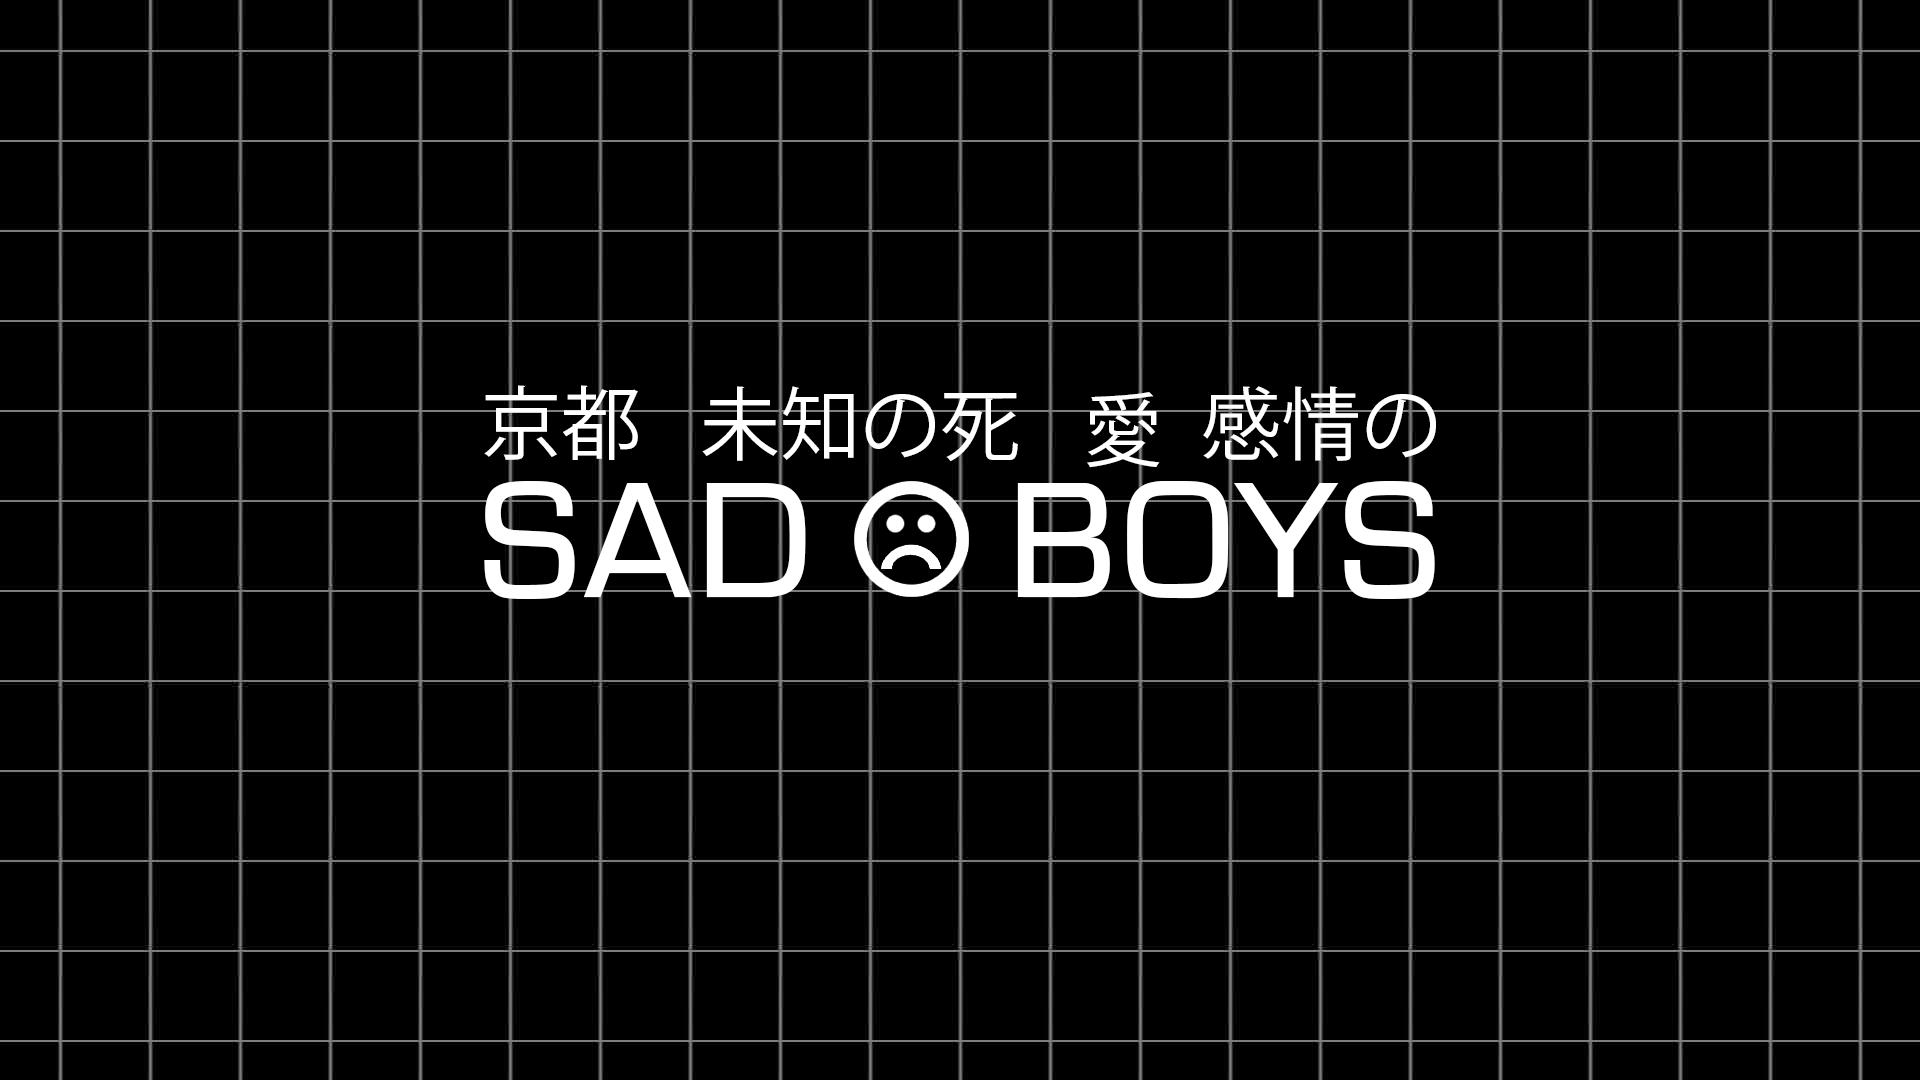 Sad Boyz Wallpapers